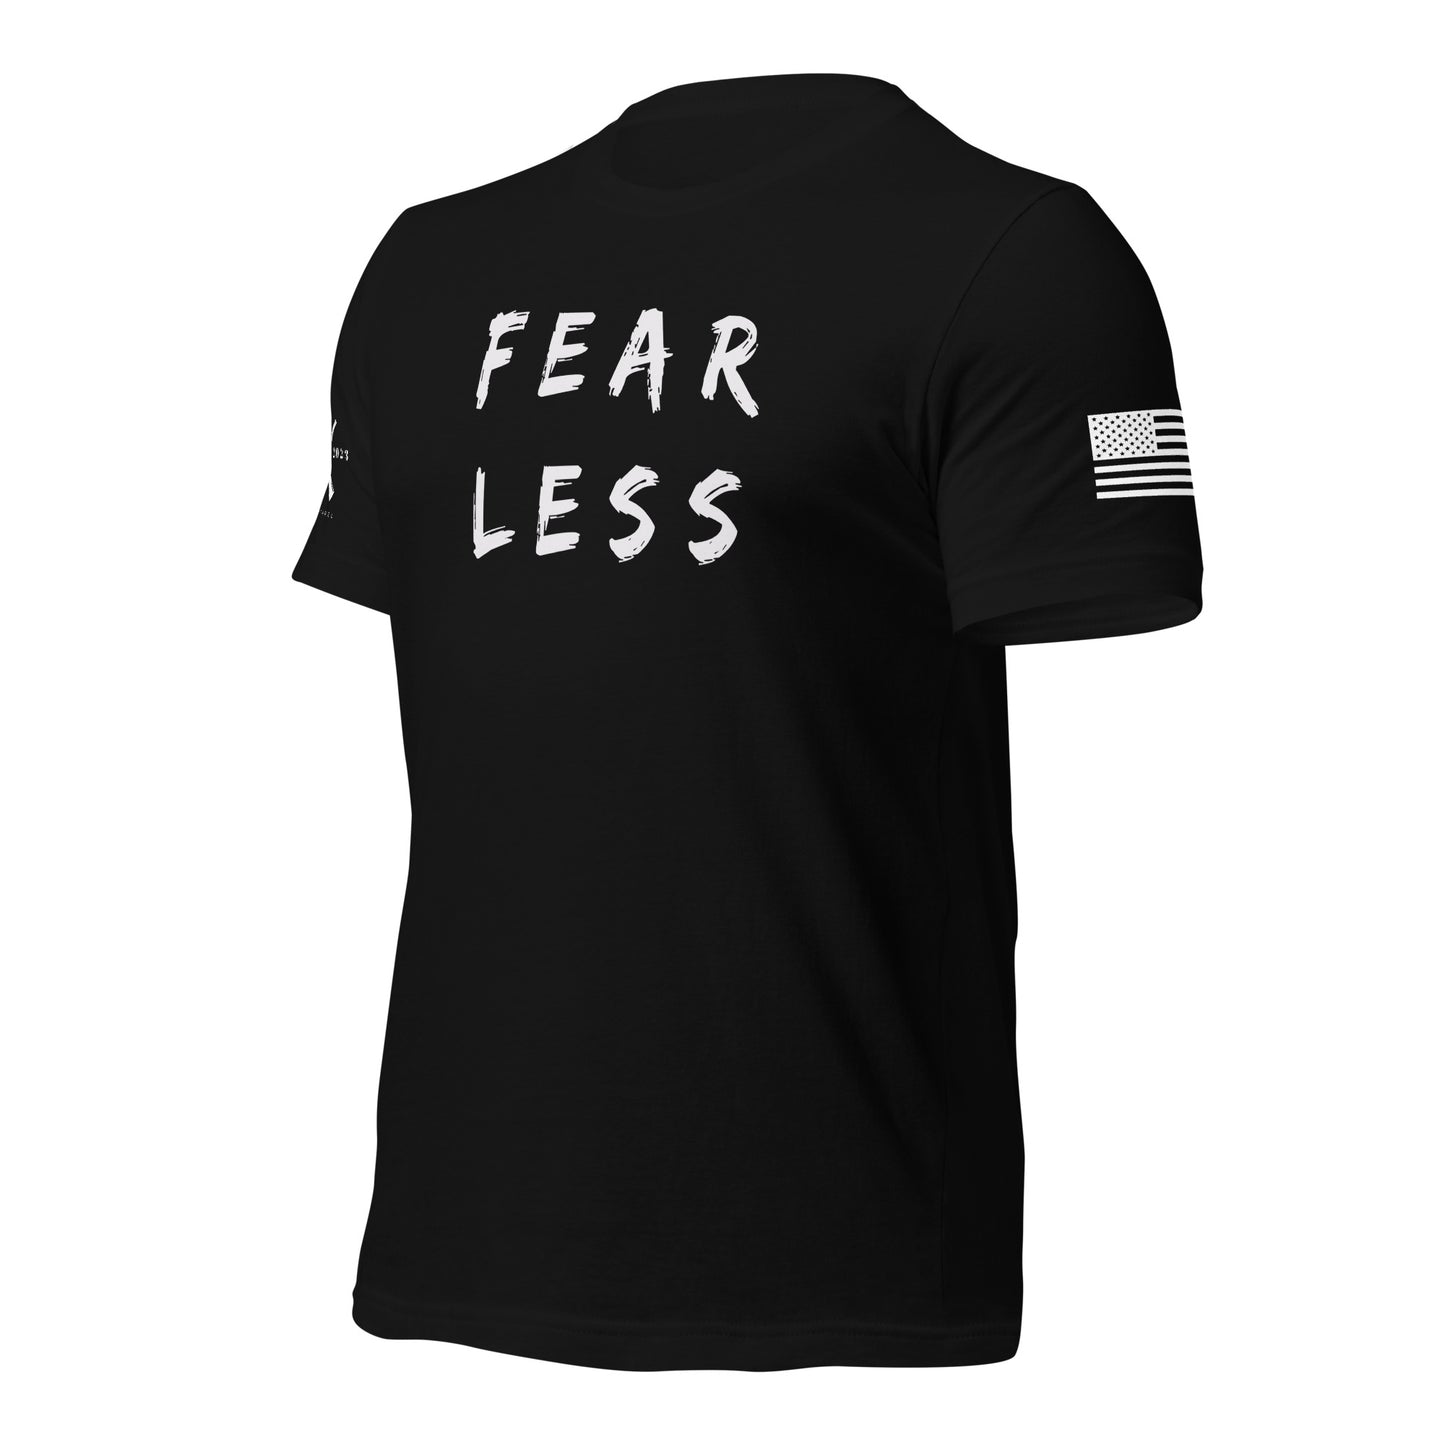 Fear Less - men's